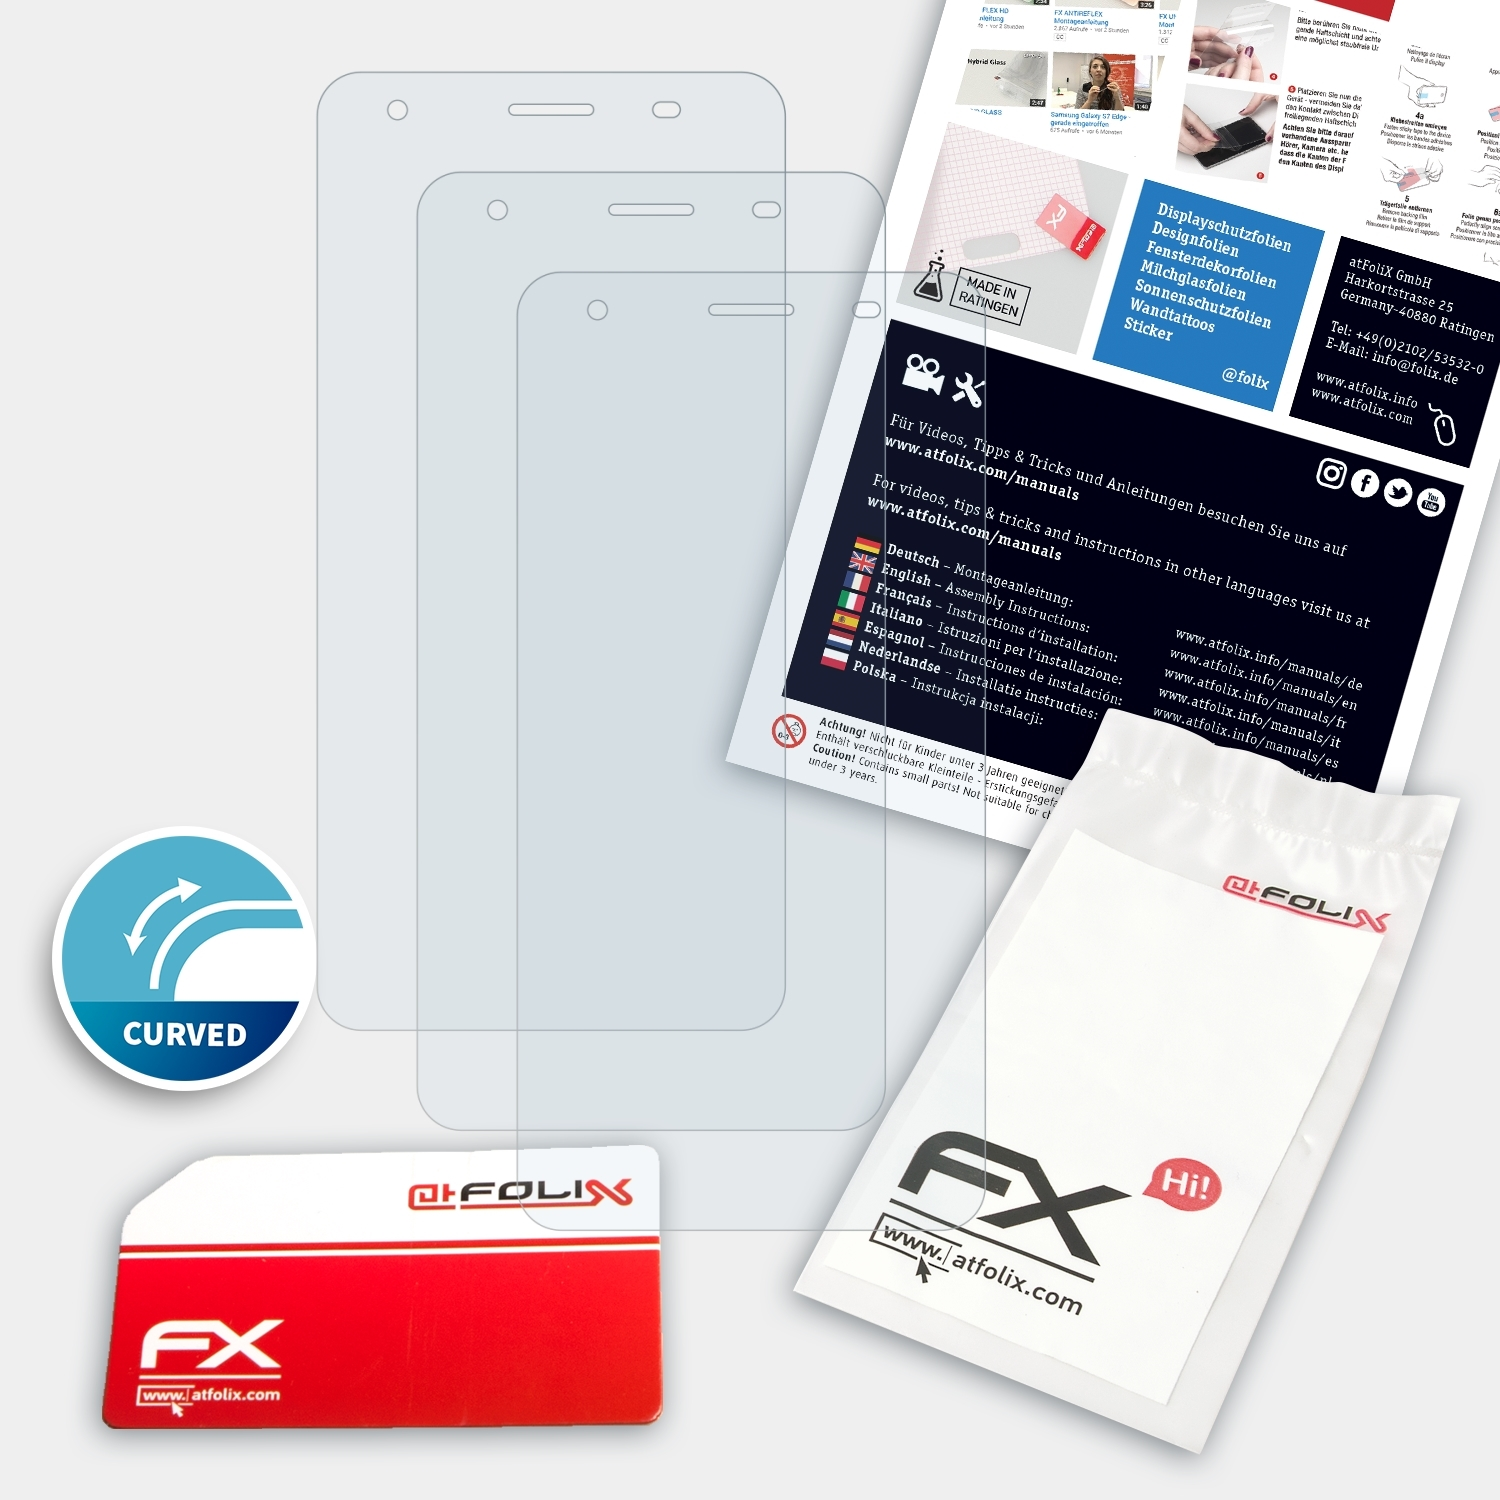 ATFOLIX 3x FX-ActiFleX Oukitel C5 Pro) Displayschutz(für